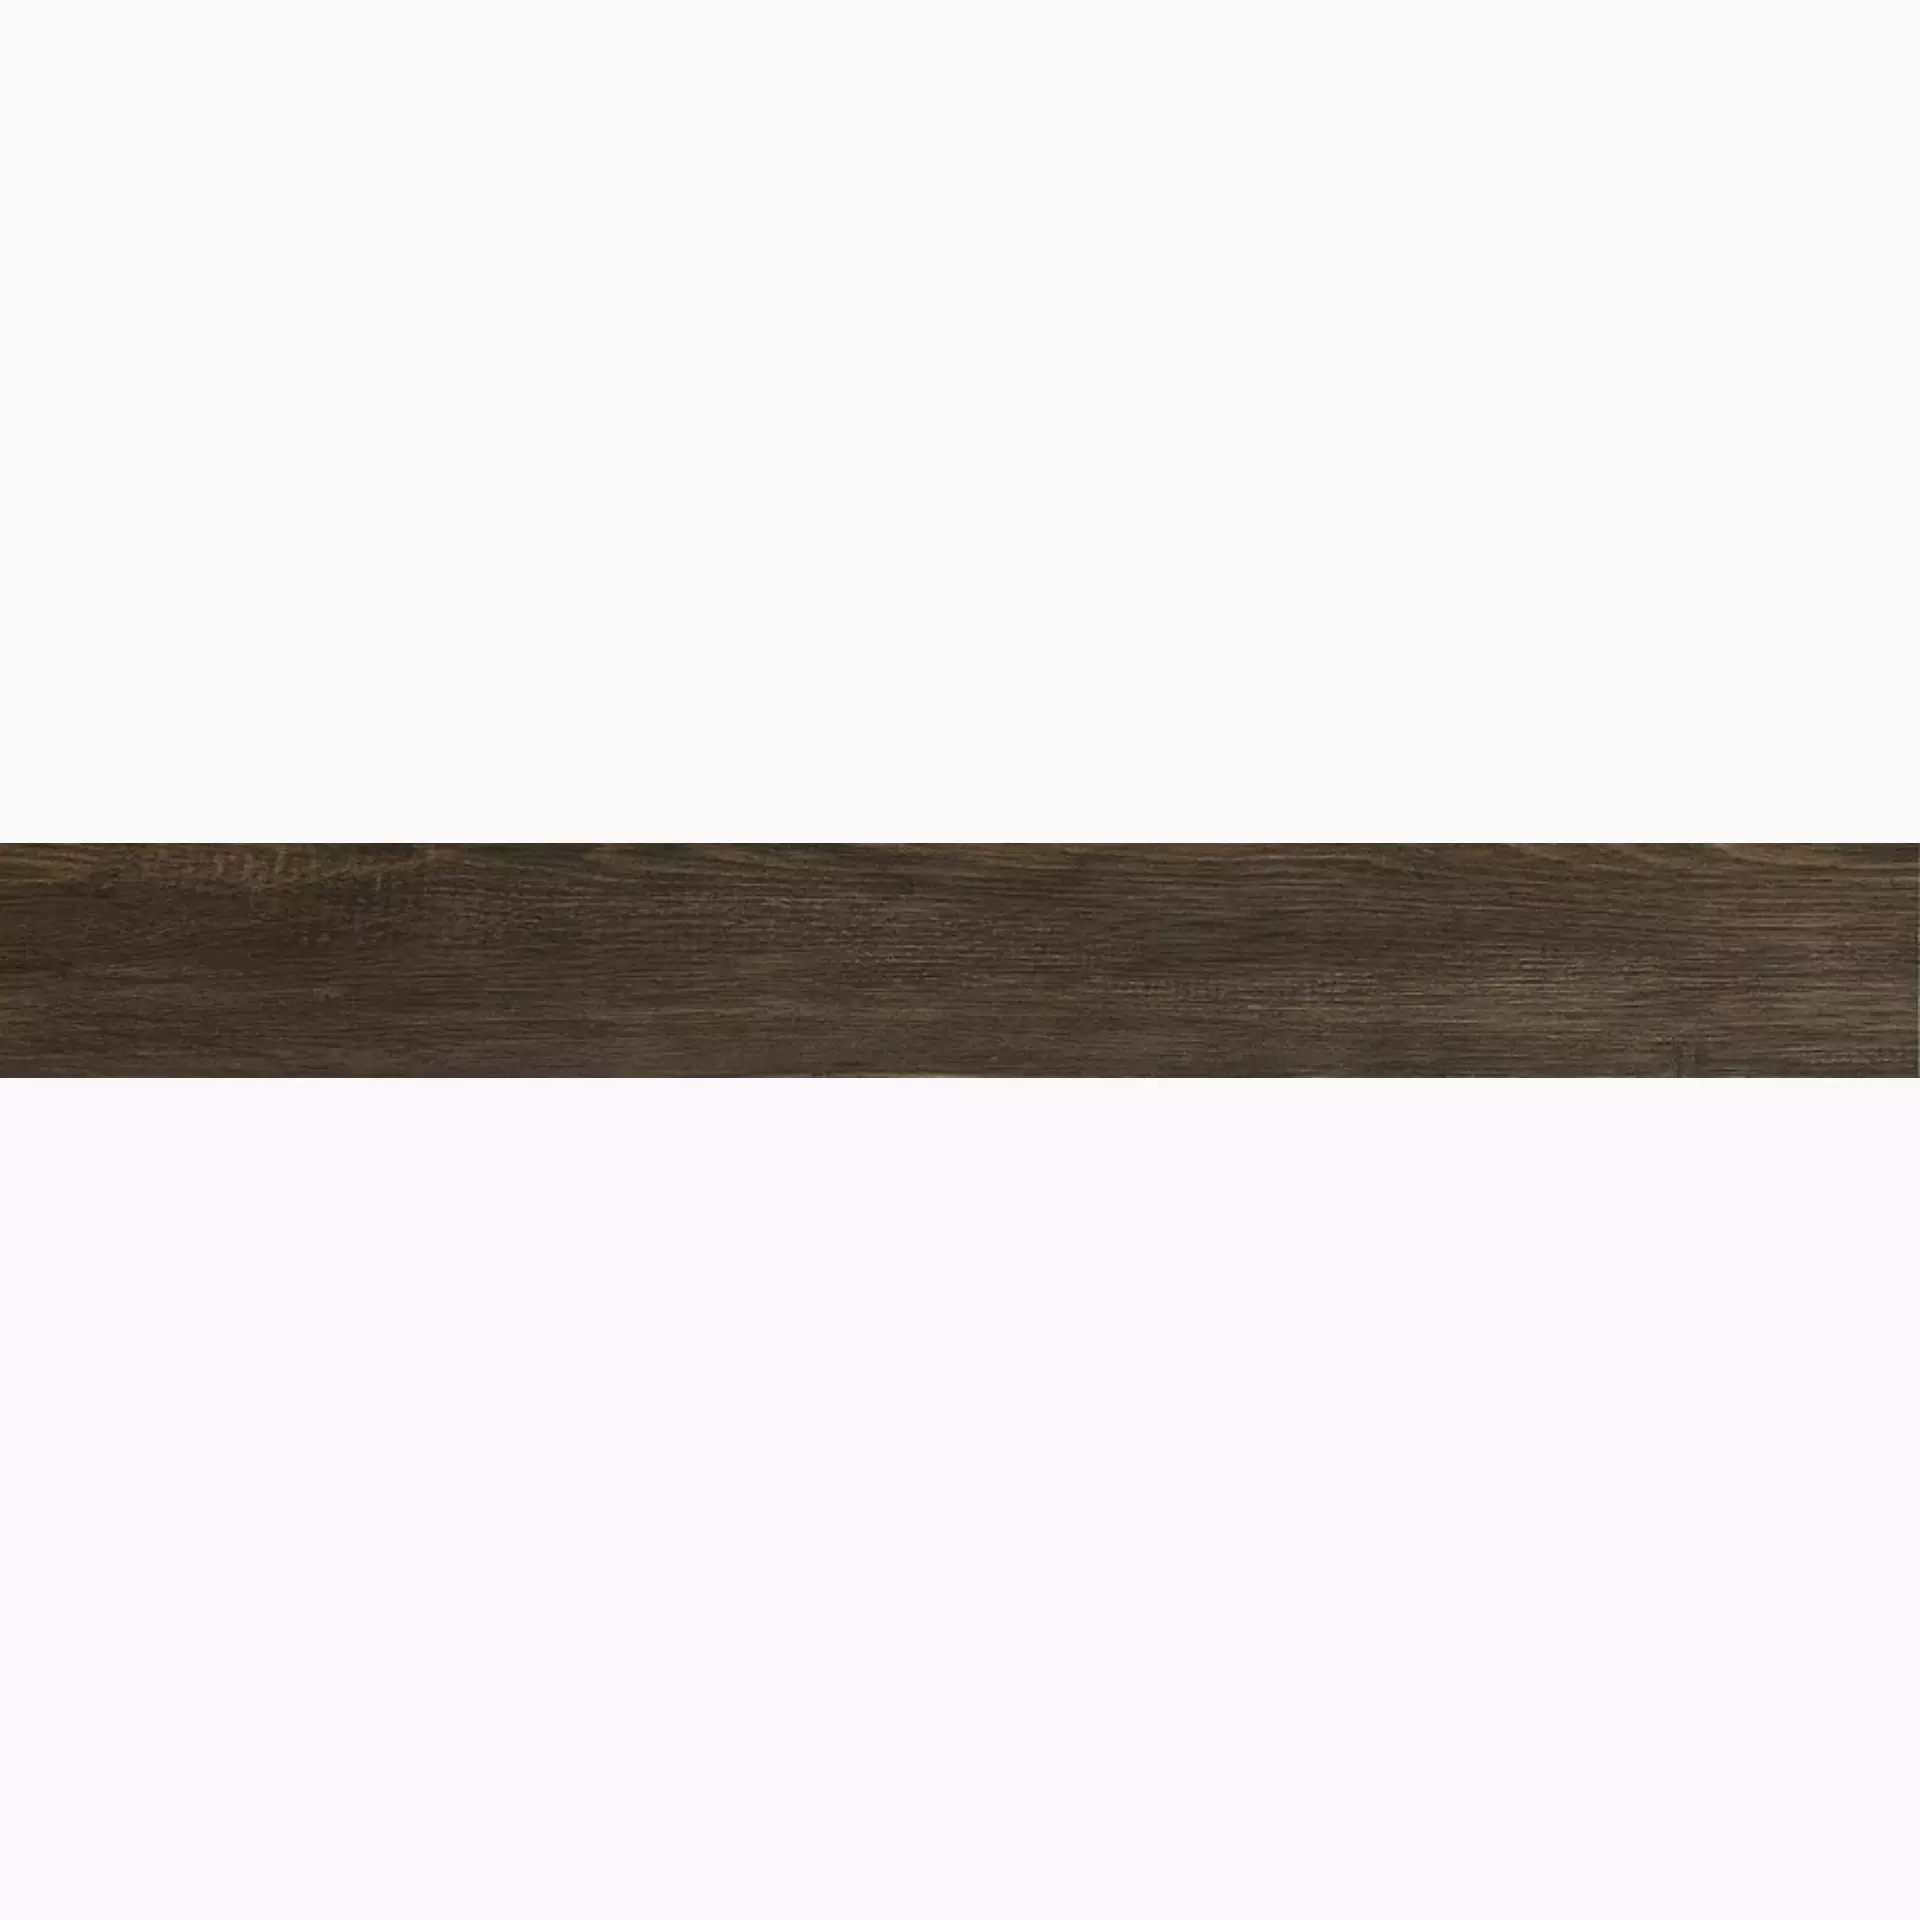 Iris E-Wood Black Lappato Vintage 898020 11x90cm 9mm